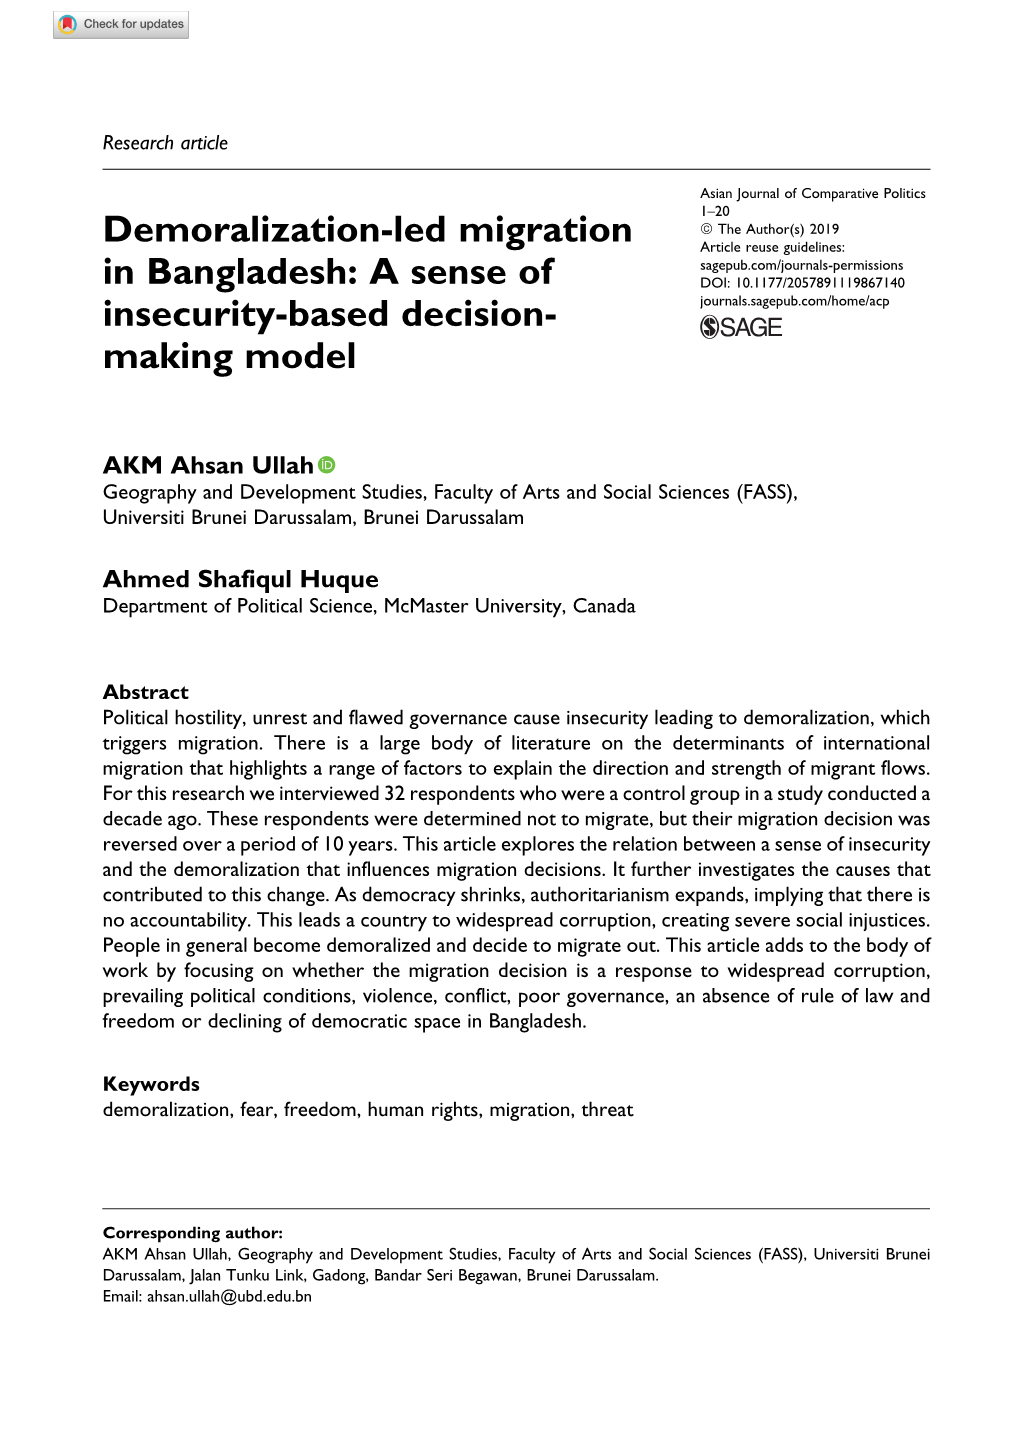 Demoralization-Led Migration in Bangladesh